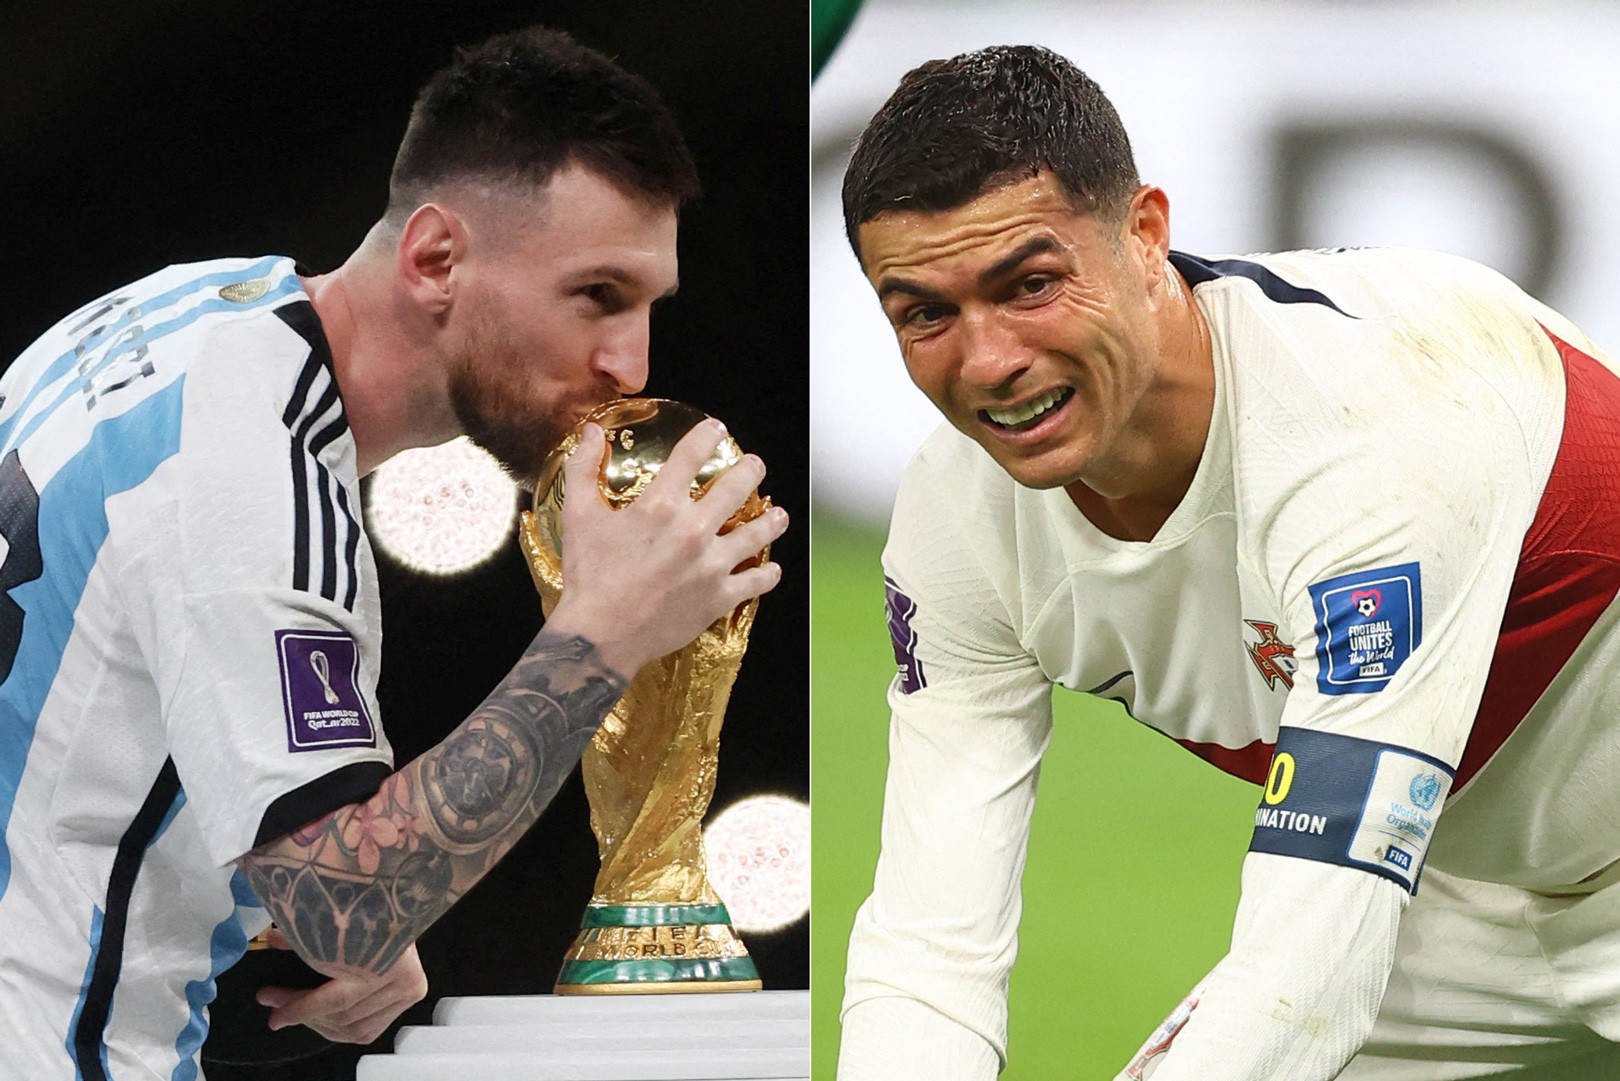 Bạn không thể bỏ lỡ bức ảnh của Messi và Ronaldo trong các trận đấu World Cup. Họ là những cầu thủ xuất sắc và rất nổi tiếng, mang đến niềm vui sảng khoái cho người hâm mộ trên toàn thế giới.